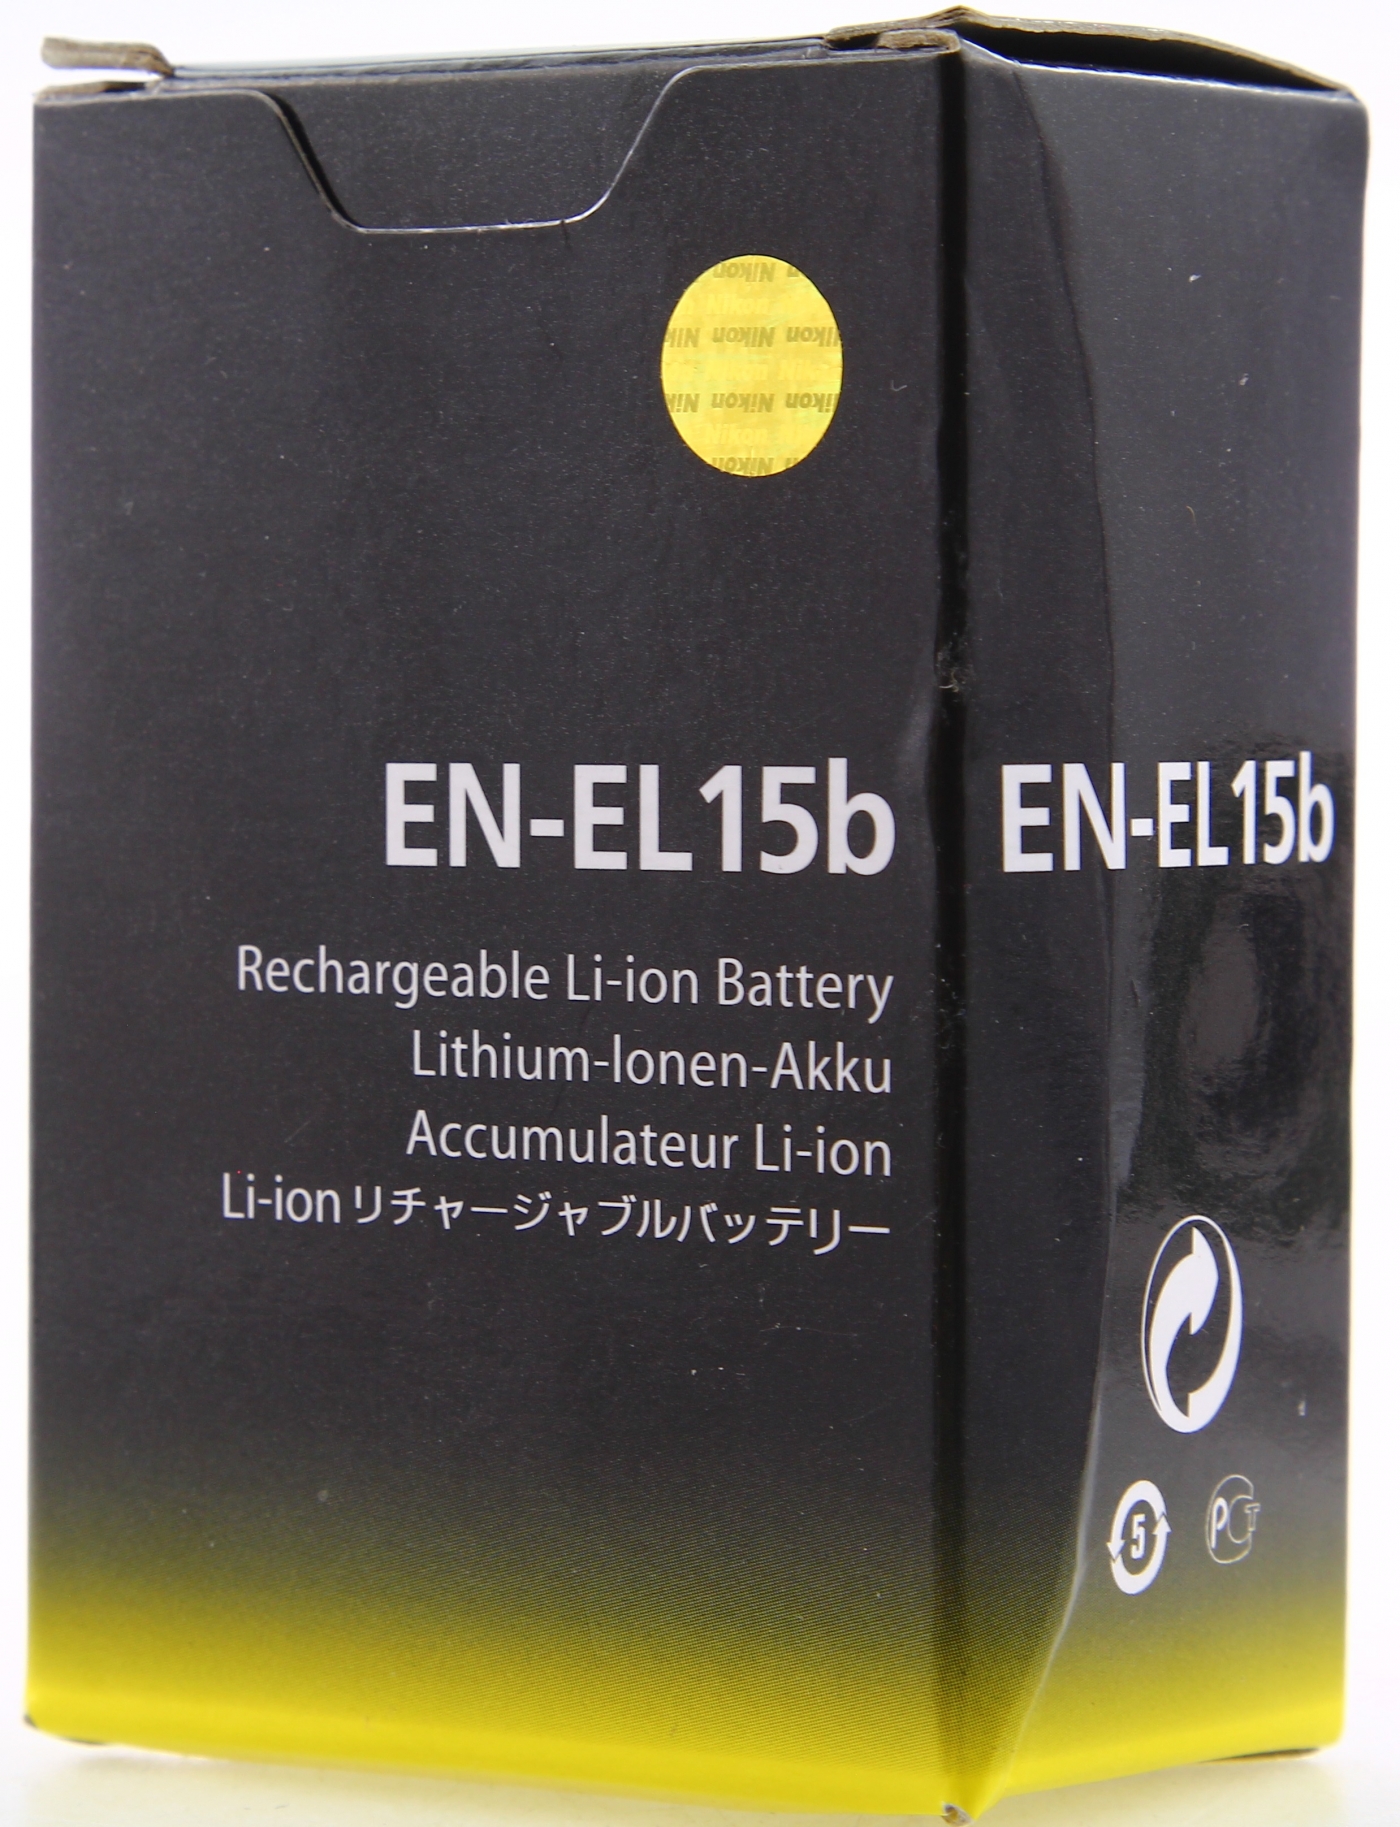 Nikon EN-EL15b